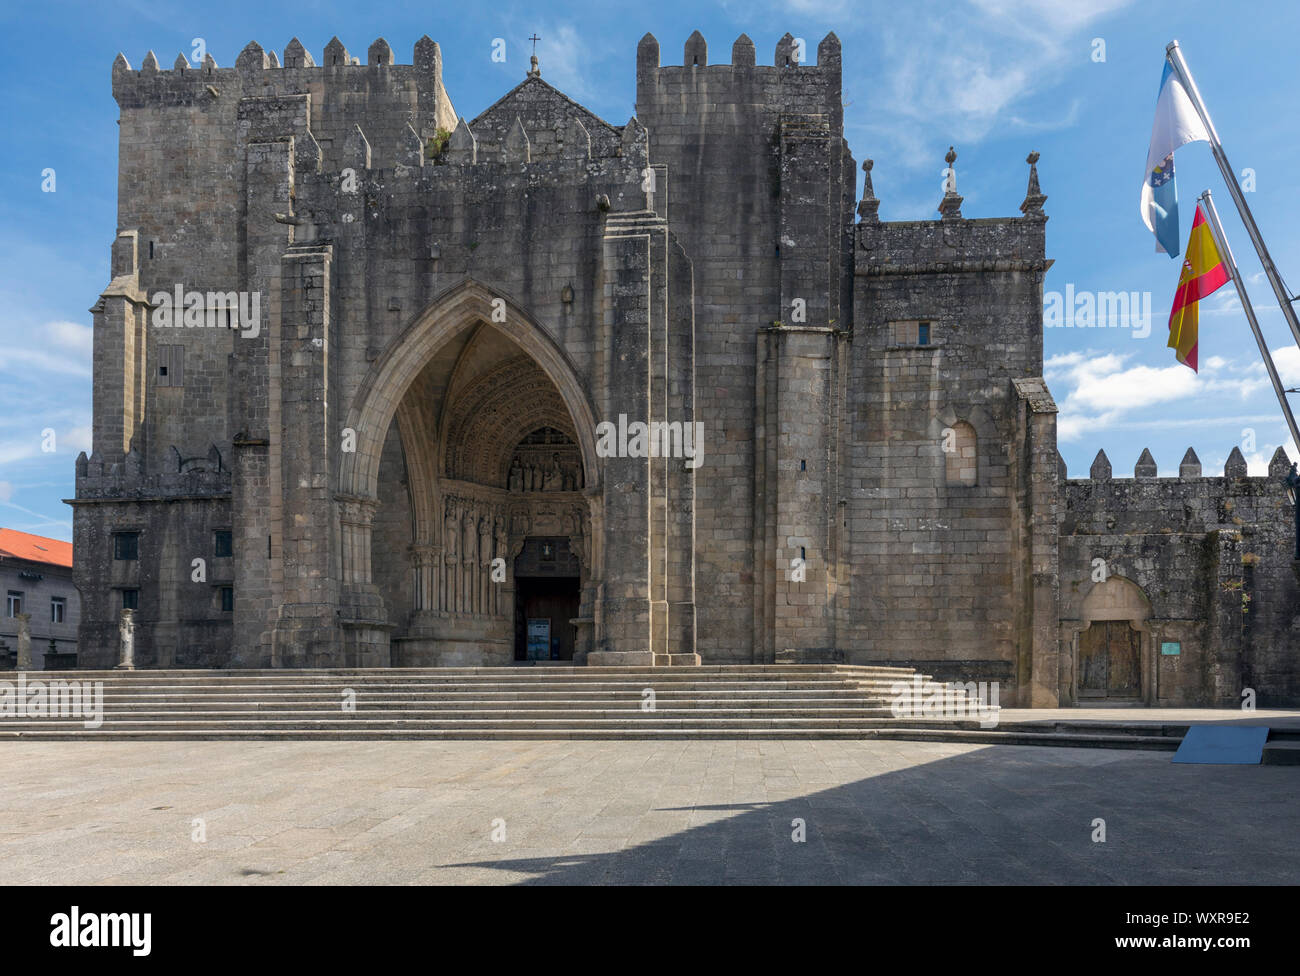 La Cathédrale romano-gothique de Santa Maria, construite pendant le 11ème-13ème siècles. Cathédrale St Mary. Tui, province de Pontevedra, Galice, Espagne Banque D'Images